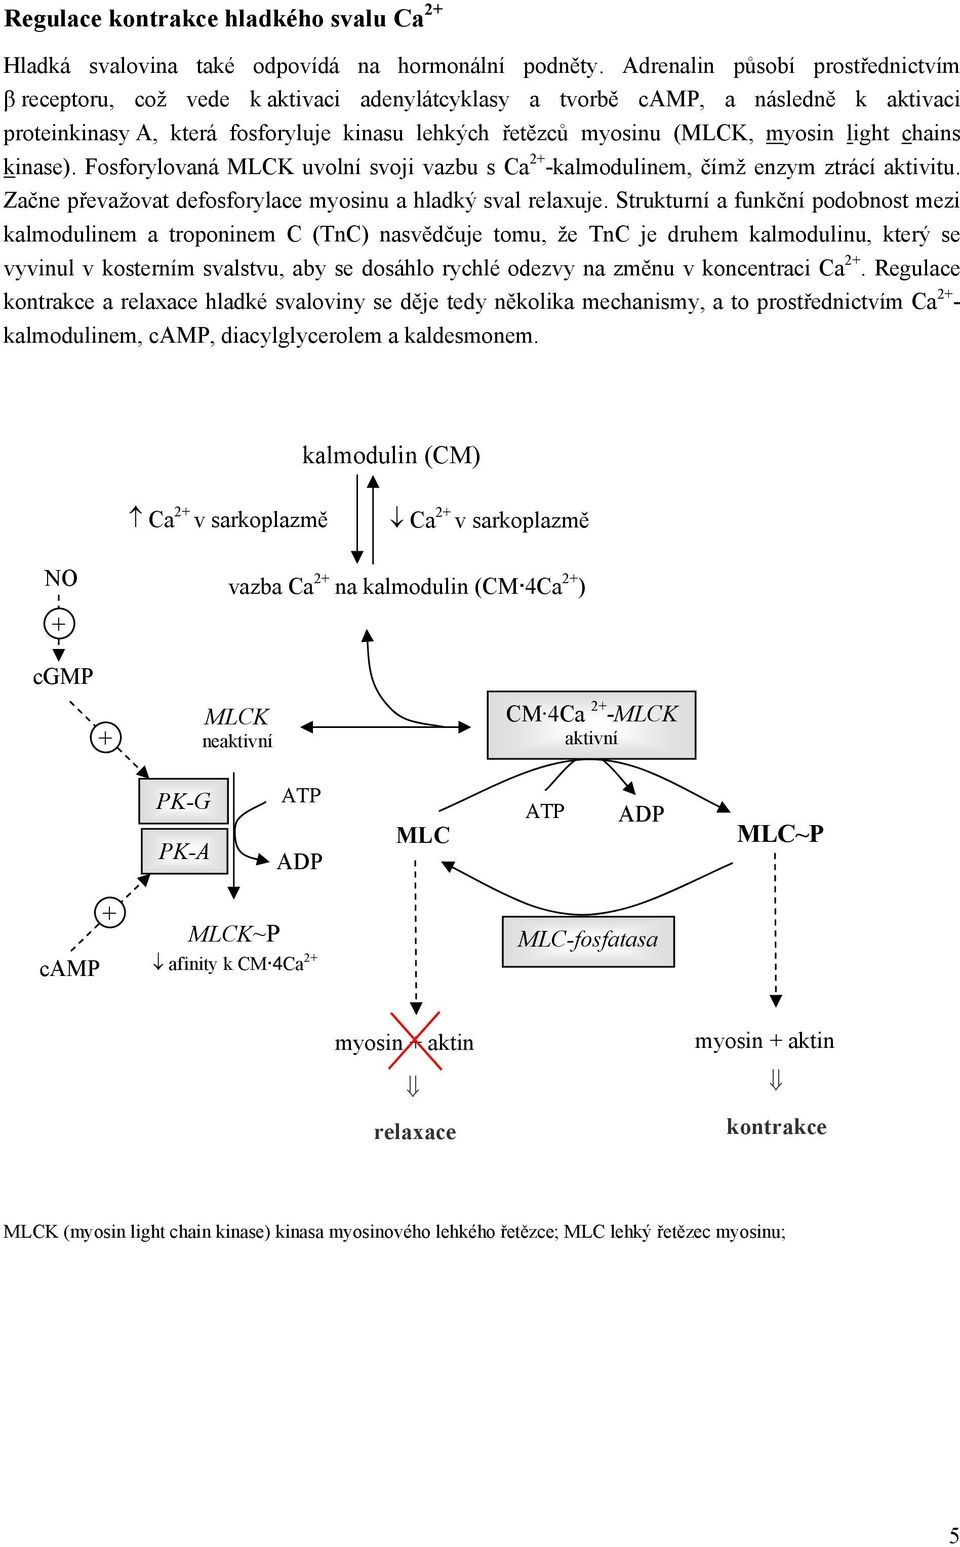 light chains kinase). Fosforylovaná MLCK uvolní svoji vazbu s Ca 2 -kalmodulinem, čímž enzym ztrácí aktivitu. Začne převažovat defosforylace myosinu a hladký sval relaxuje.